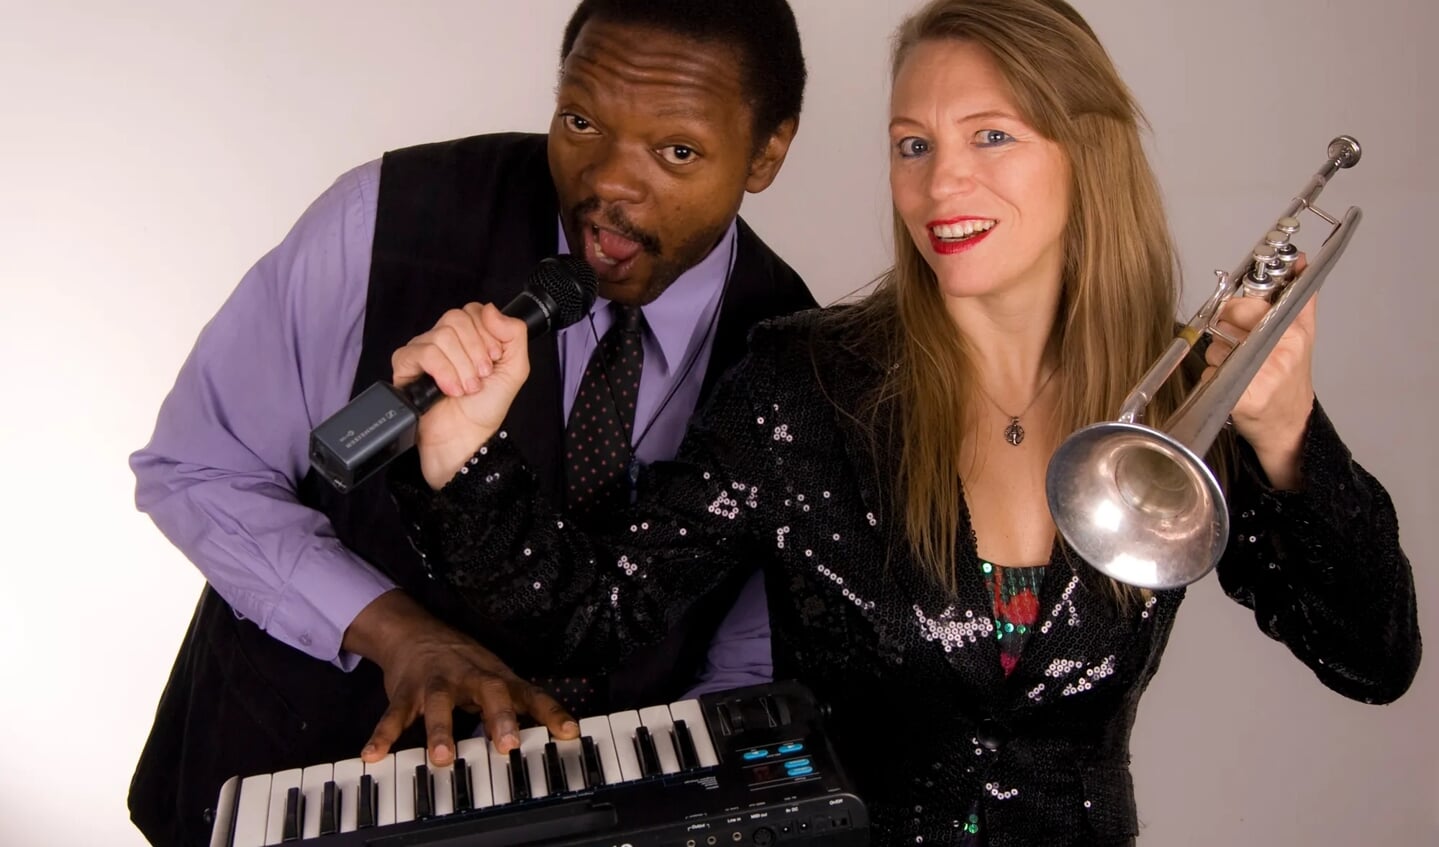 “Warren Byrd en Saskia Laroo brengen een speciaal blues-soul-gospel programma begeleid door piano, percussie, trompet, saxofoon en contrabas”.